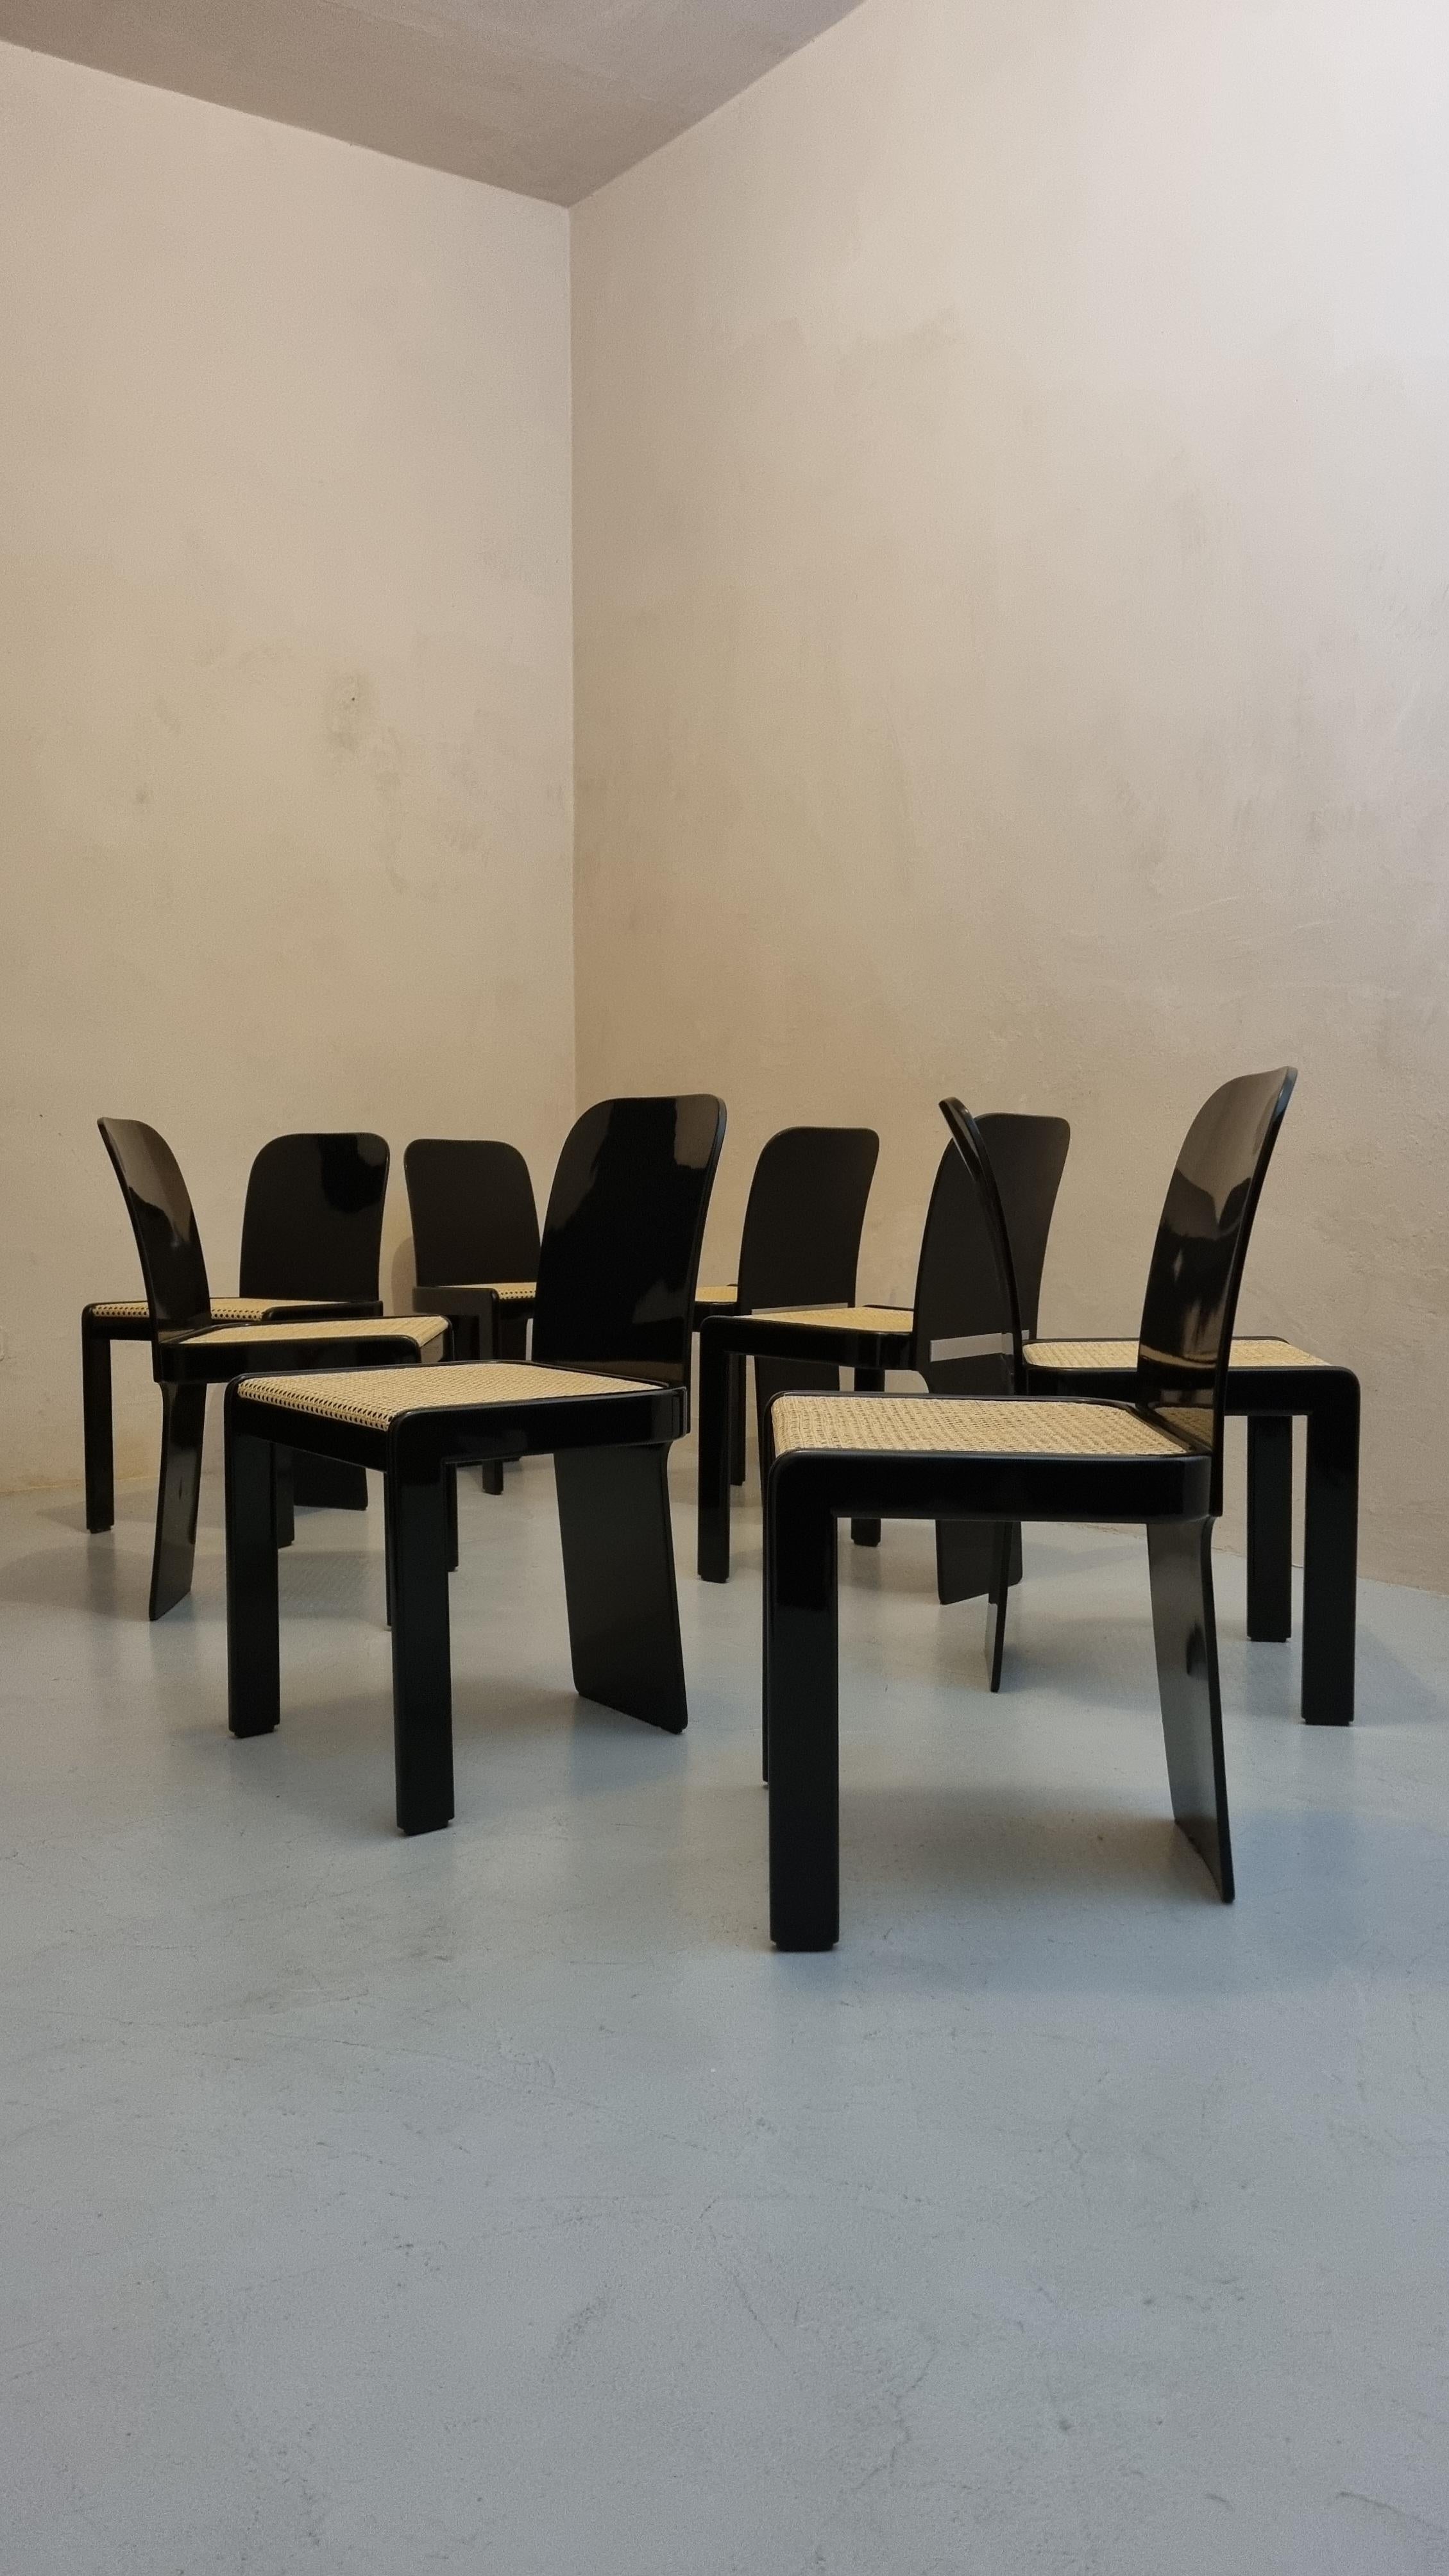 Set di 8 sedie disegnate da Pierluigi Molinari per Pozzi, 1970.
Nate come sedie per tavolo da gioco, trovano spazio negli ambienti più raffinati ed eleganti, questa raro set è in condizioni eccellenti, completamente restaurate sono pronte per una